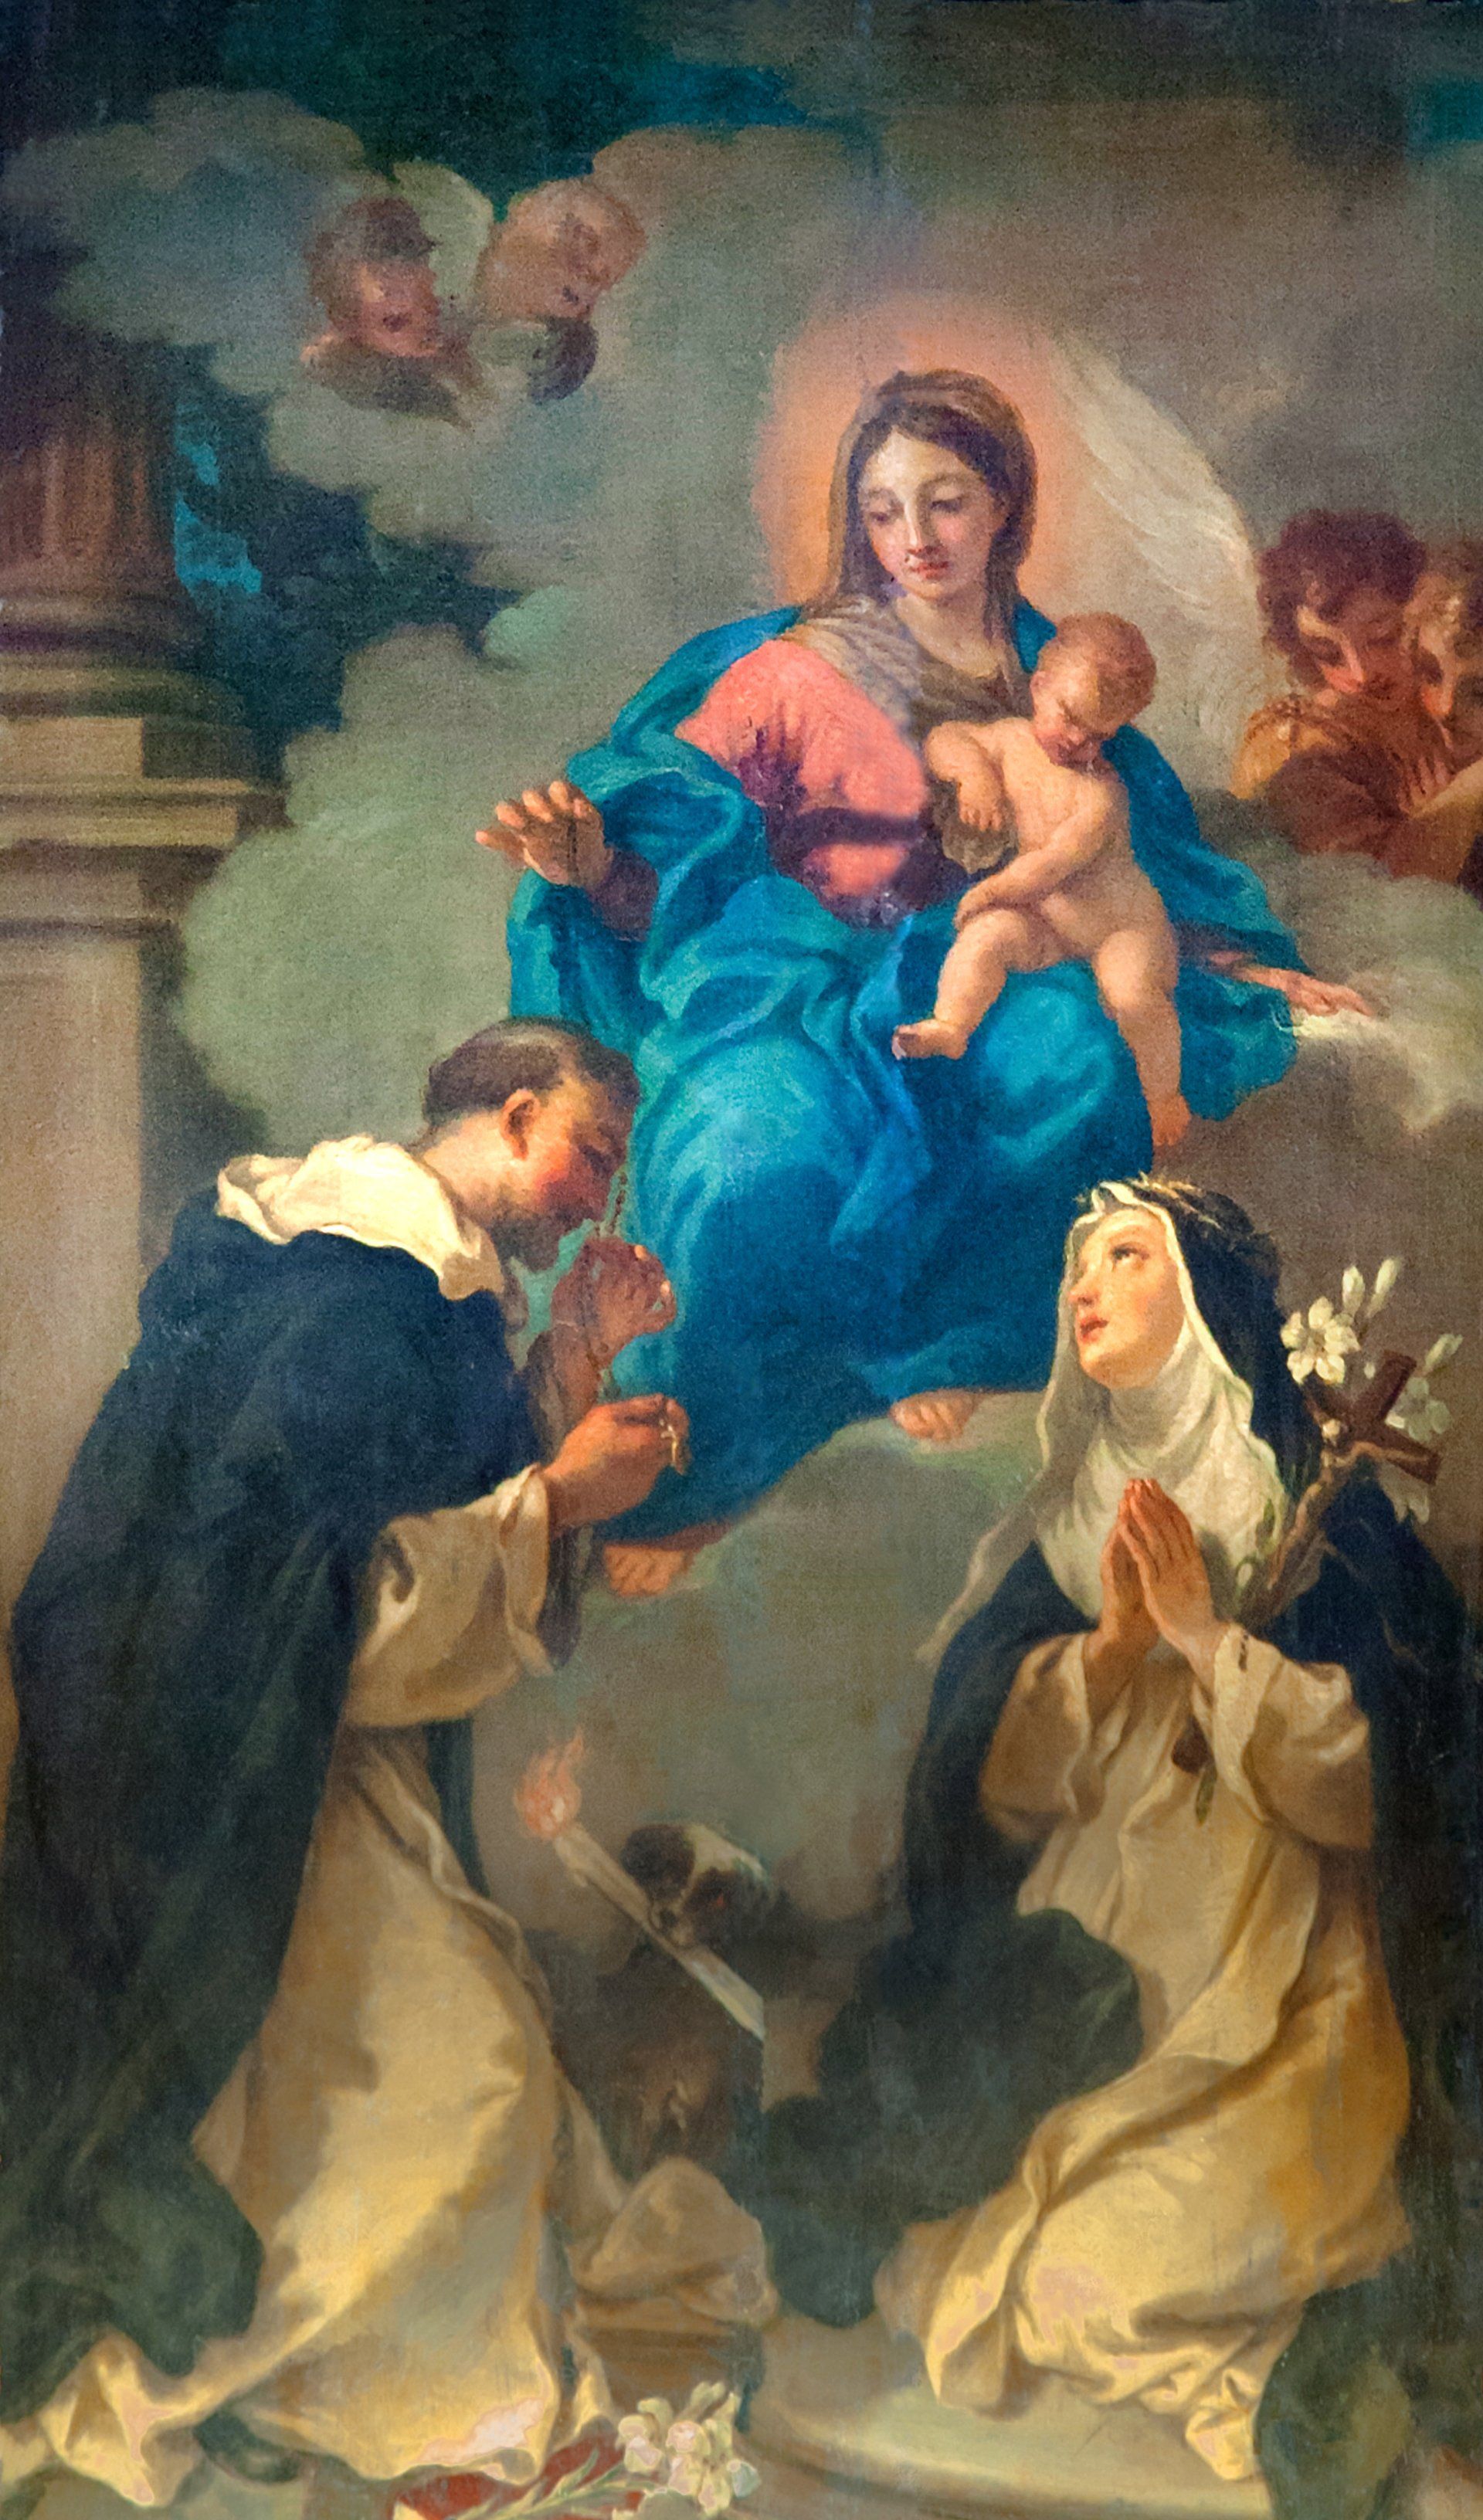 Vergine del SS. Rosario di S. Ceccarini (1748) foto G. Alfonsi